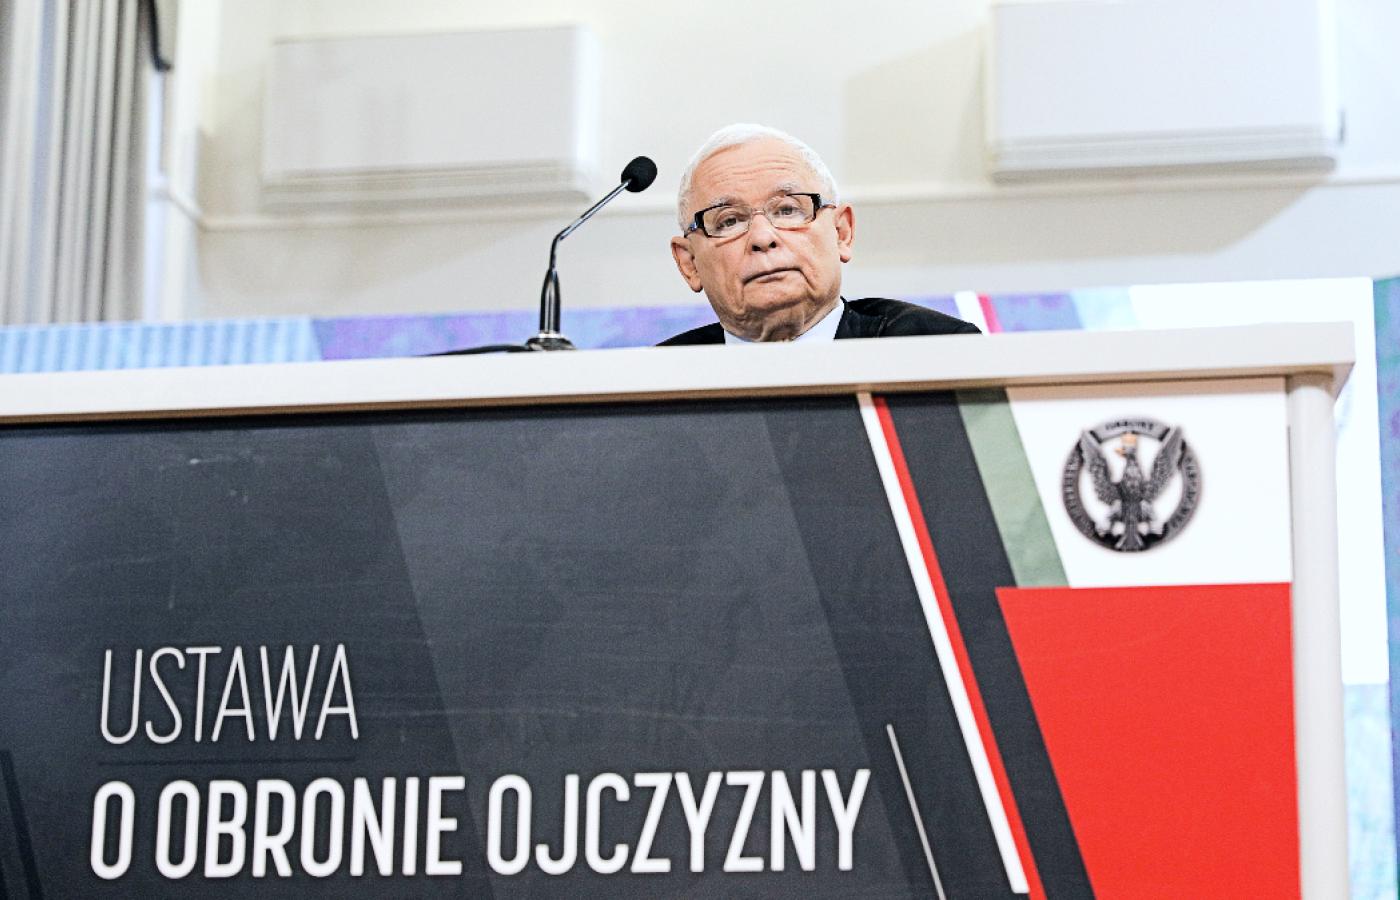 Wicepremier i prezes PiS Jarosław Kaczyński w czasie prezentacji ustawy o obronie ojczyzny